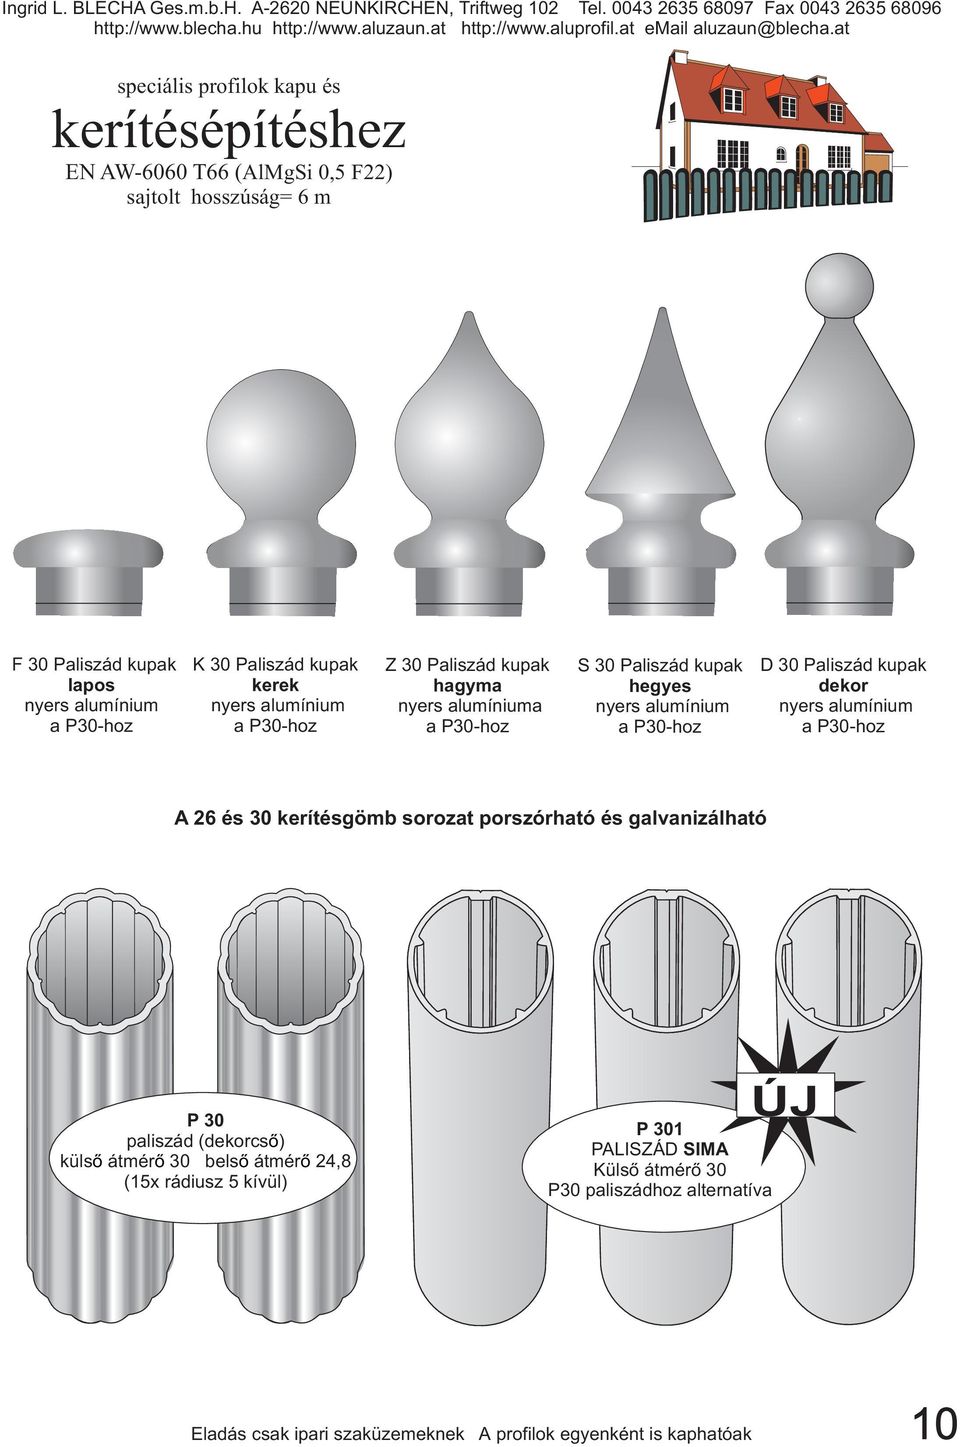 Paliszád kupak dekor nyers alumínium a P30-hoz A 26 és 30 kerítésgömb sorozat porszórható és galvanizálható P30 paliszád